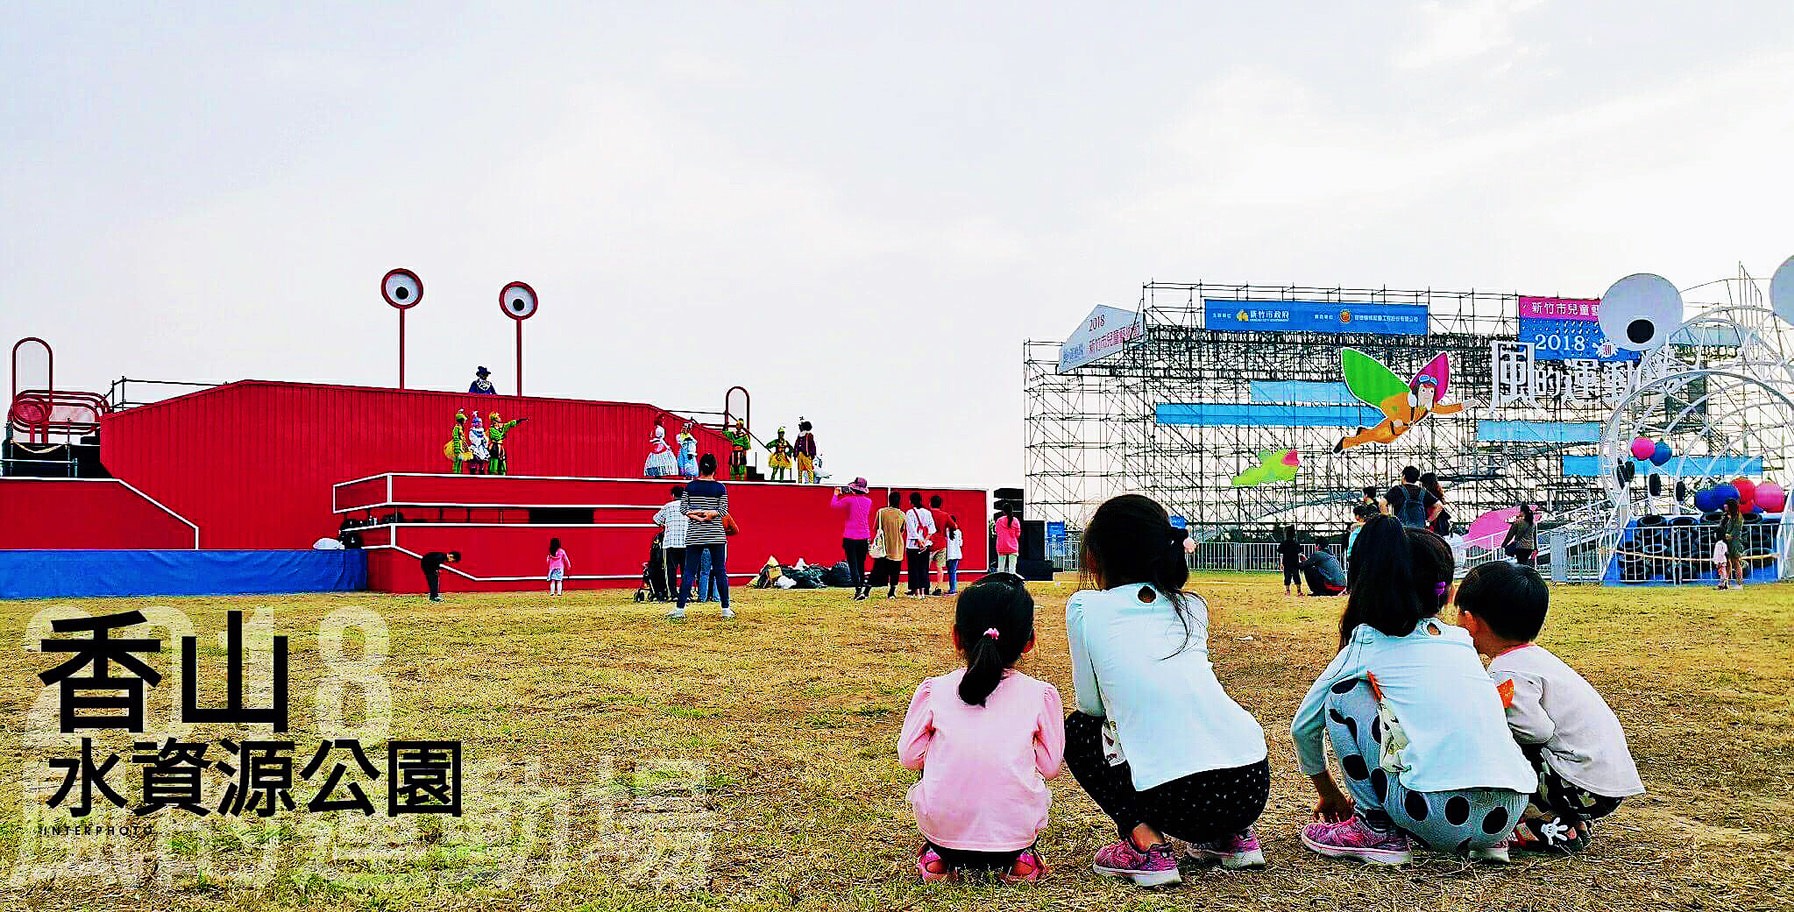 新竹市兒童藝術節懶人包！風的運動場活動時間、接駁車交通管制、新竹美食小吃整理、現場照片紀錄